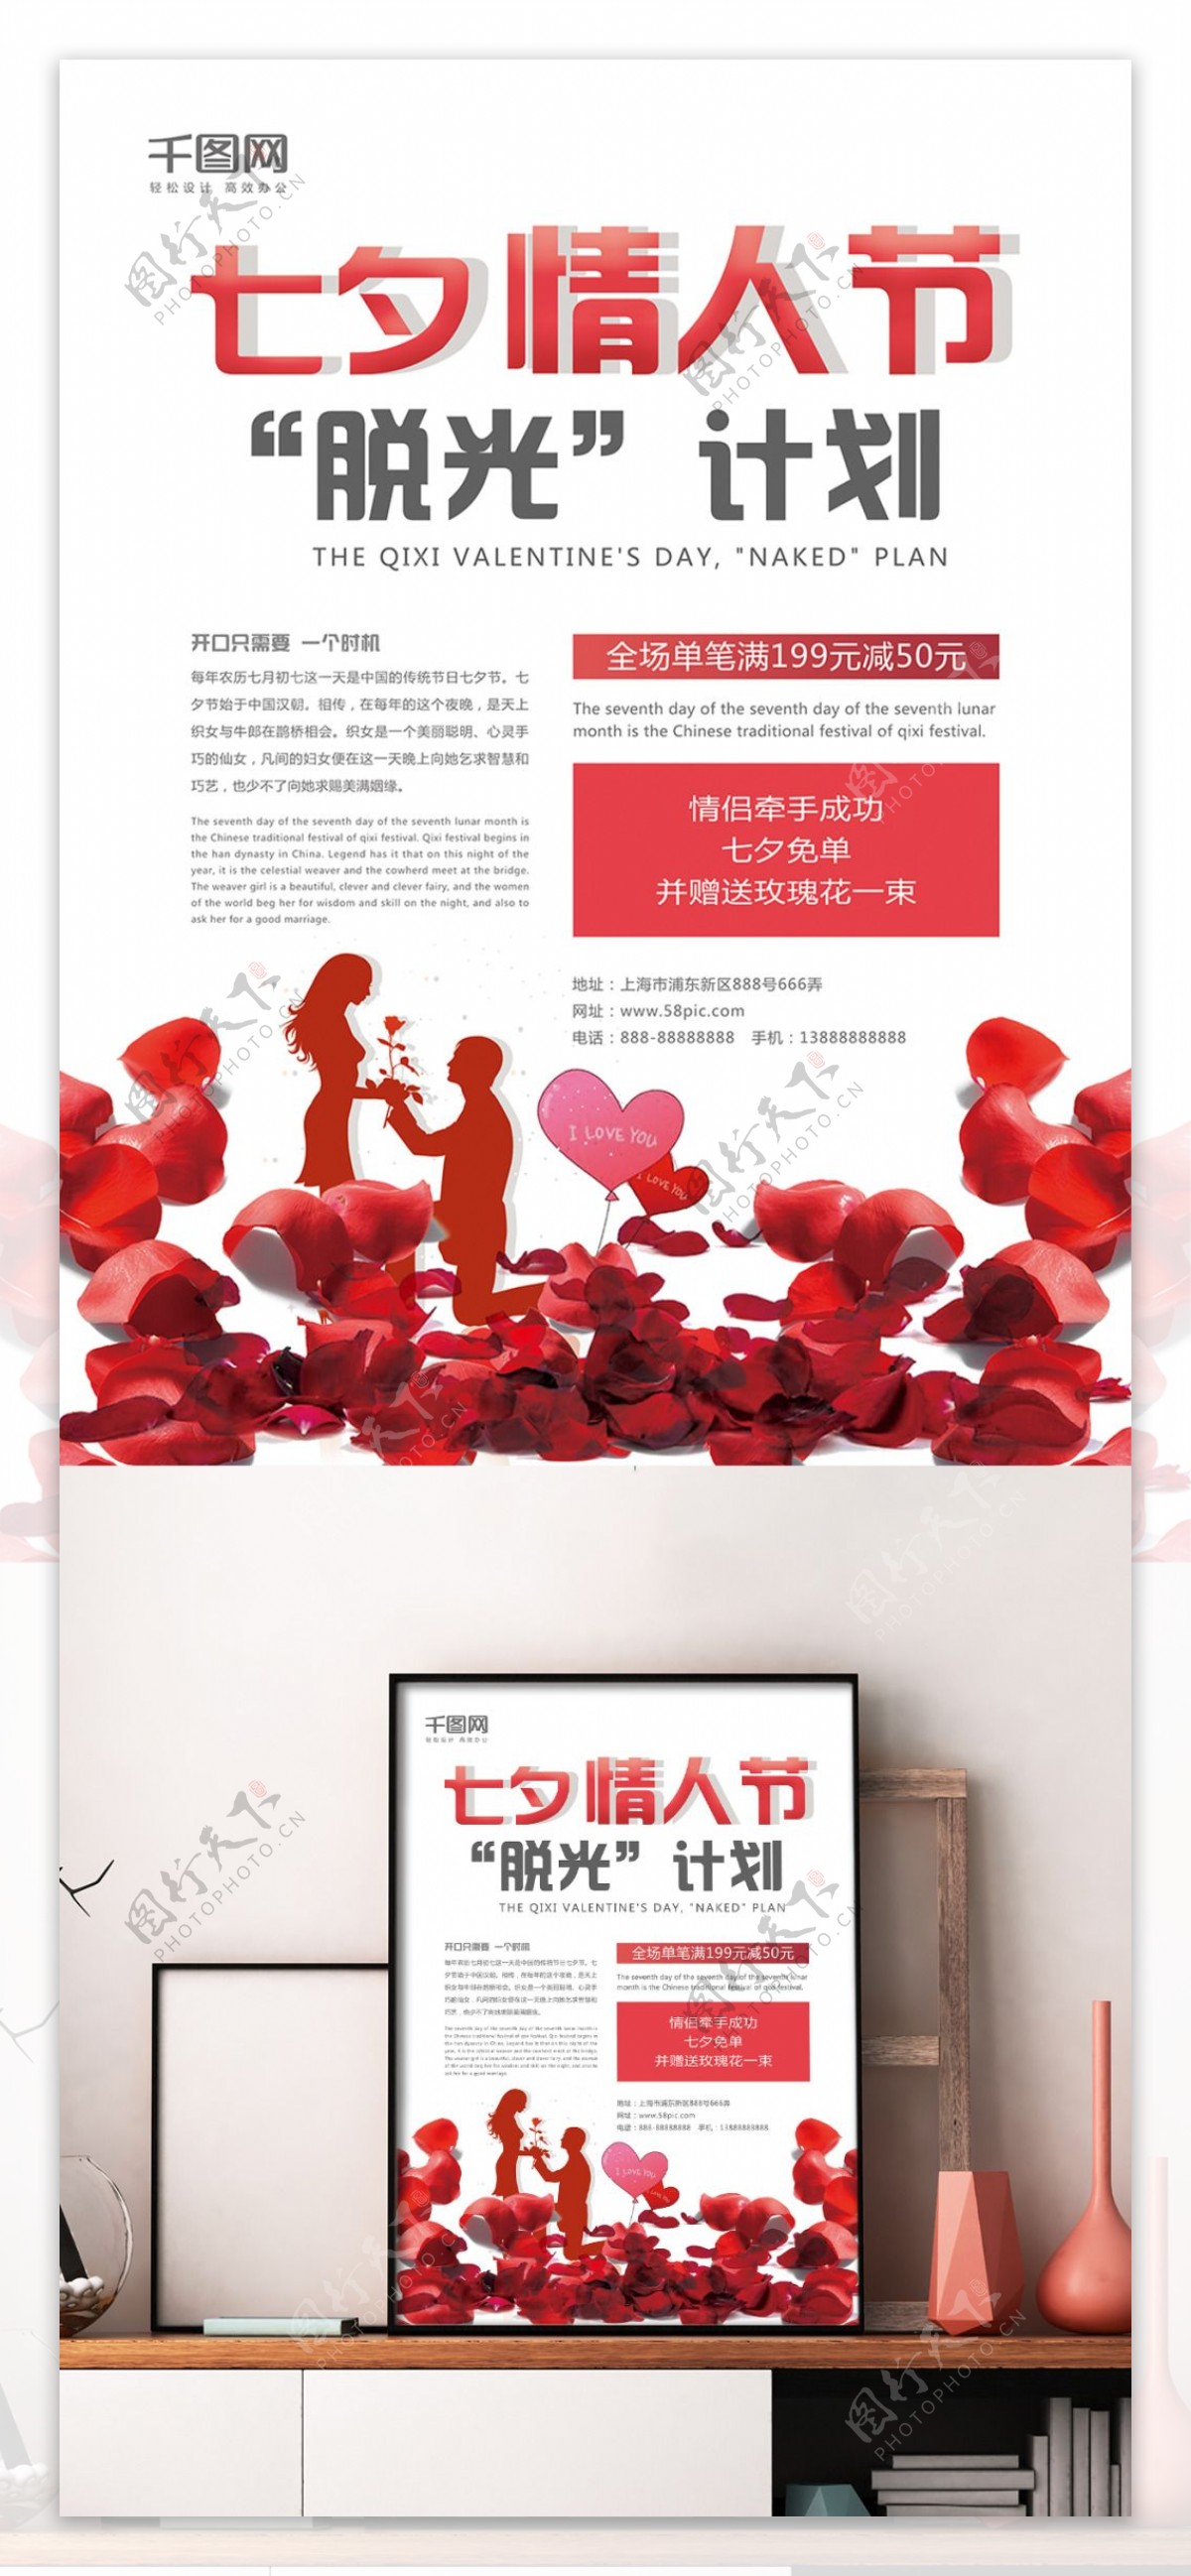 创意海报七夕脱光计划情人节活动促销海报